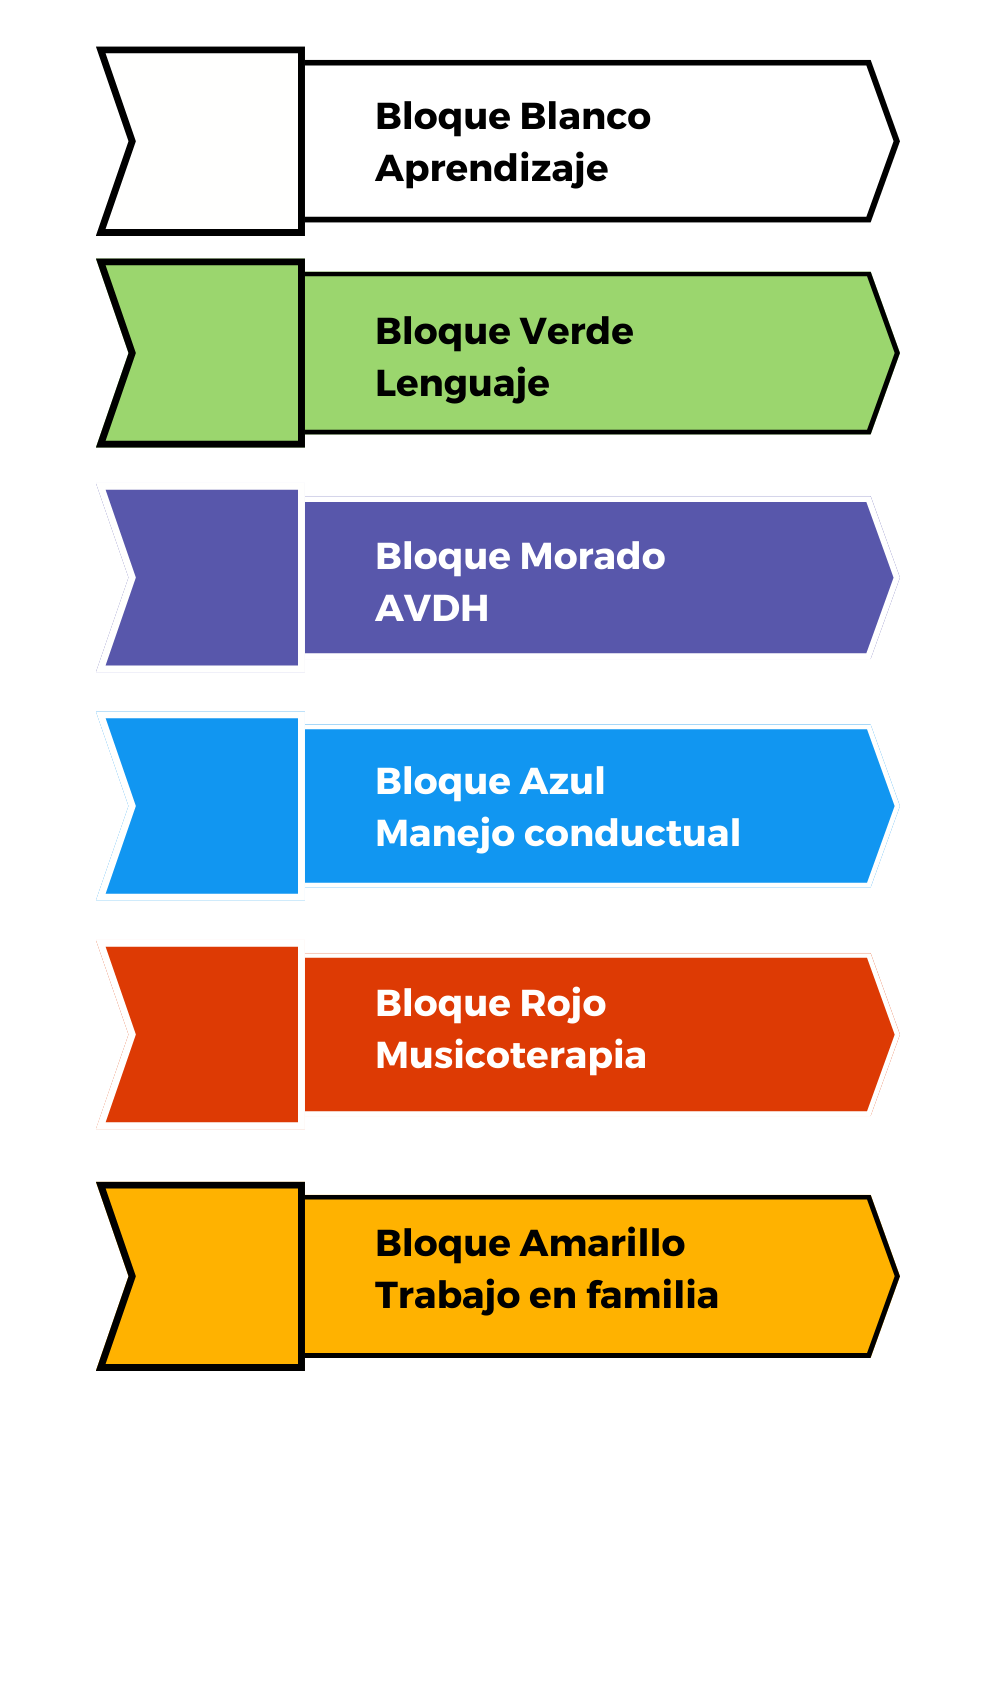 Bloques del modelo Soulé, está dividido en 6 bloques: Aprendizaje, lenguaje, AVDH, manejo conductual, musicoterapia y trabajo en familia.